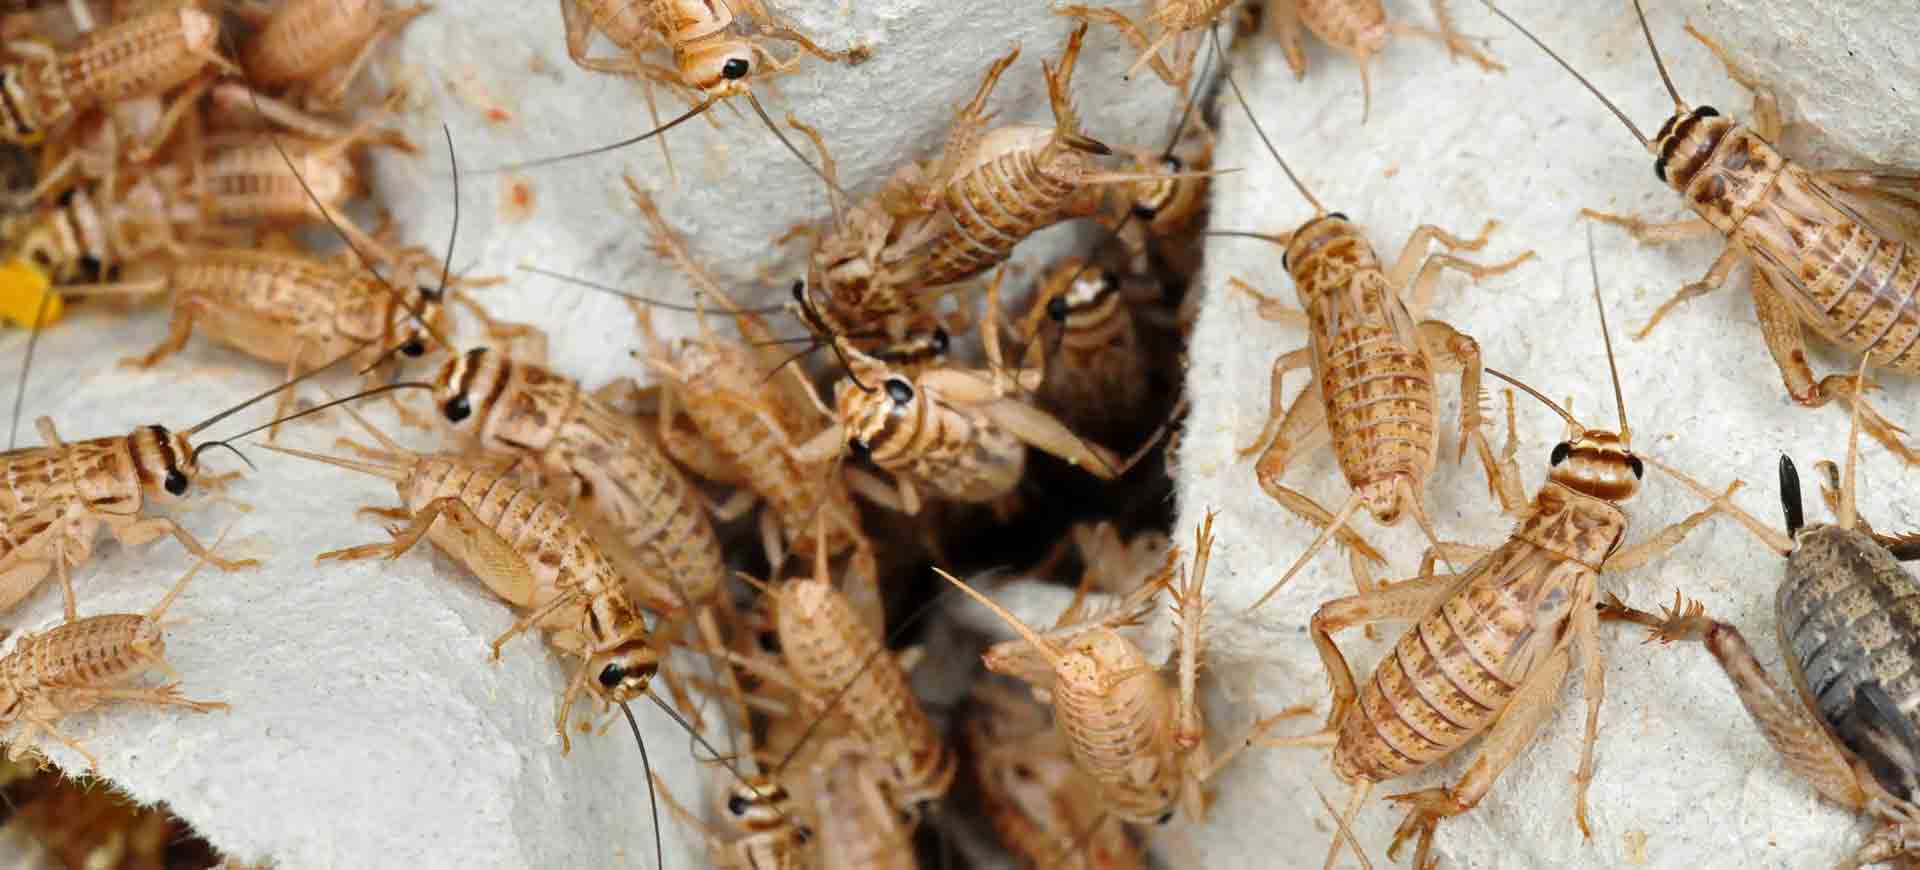 cricket pest control linda vista